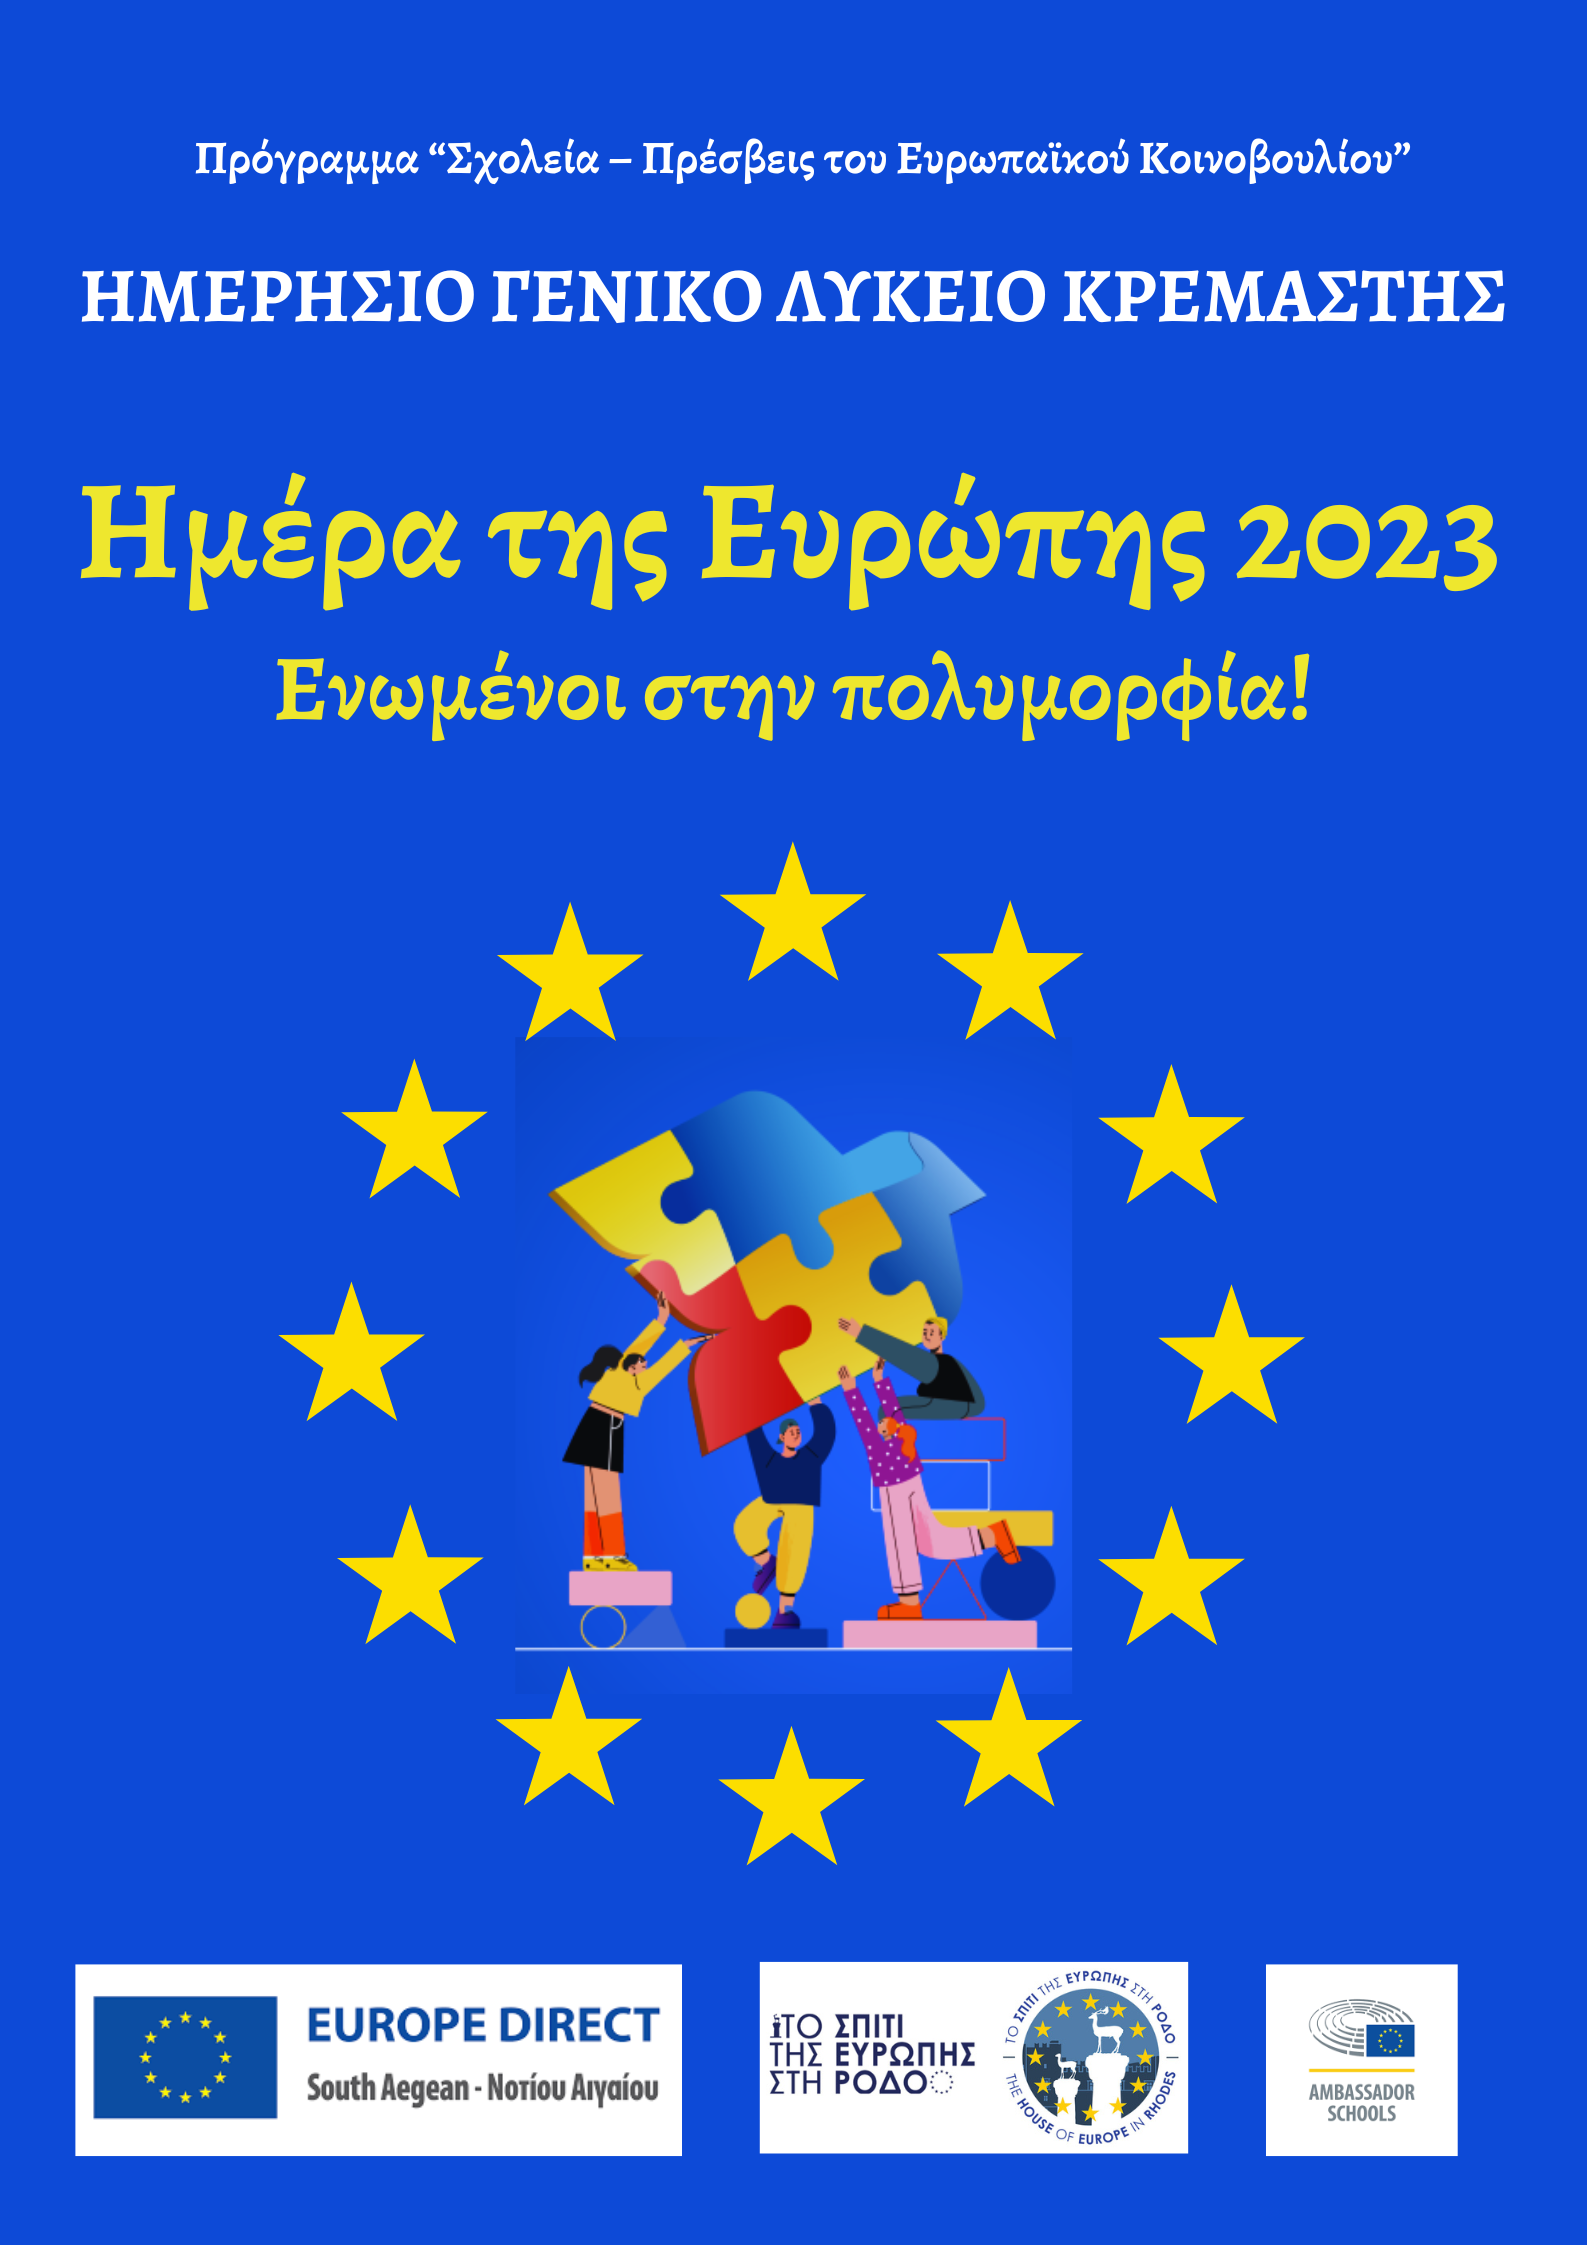 Ημέρα της Ευρώπης 2023: Γιορτάζουμε την Ευρωπαϊκή Ενότητα